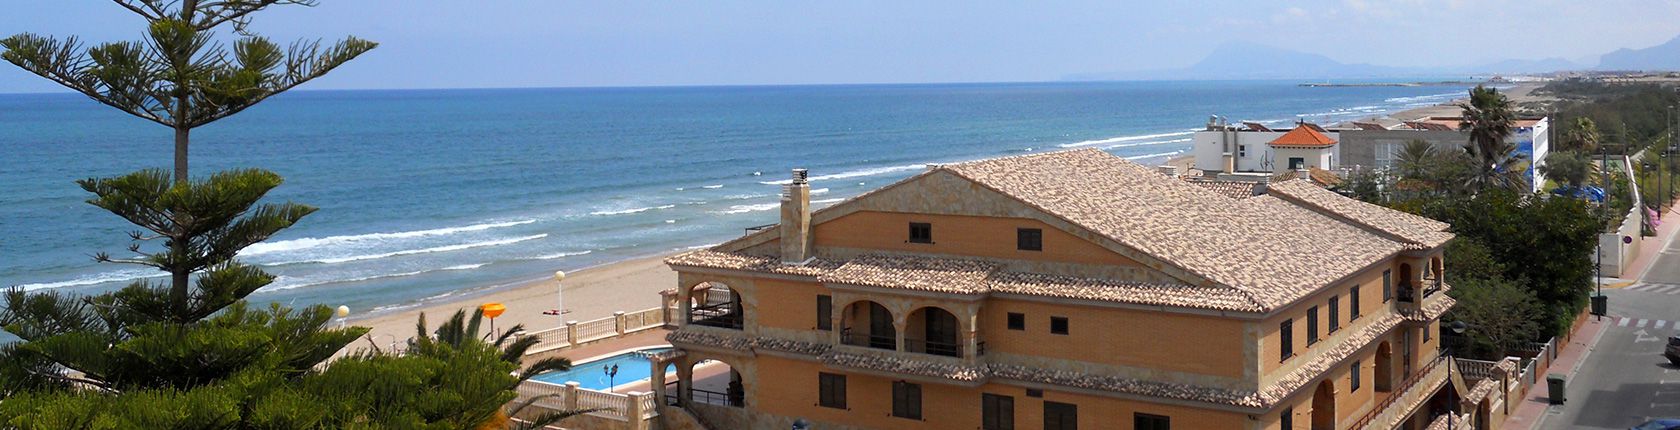 Descubra nuestra gran oferta inmobiliaria Playa de Miramar, Piles, Guardamar, Daimus. CVK & HOMES en Miramar